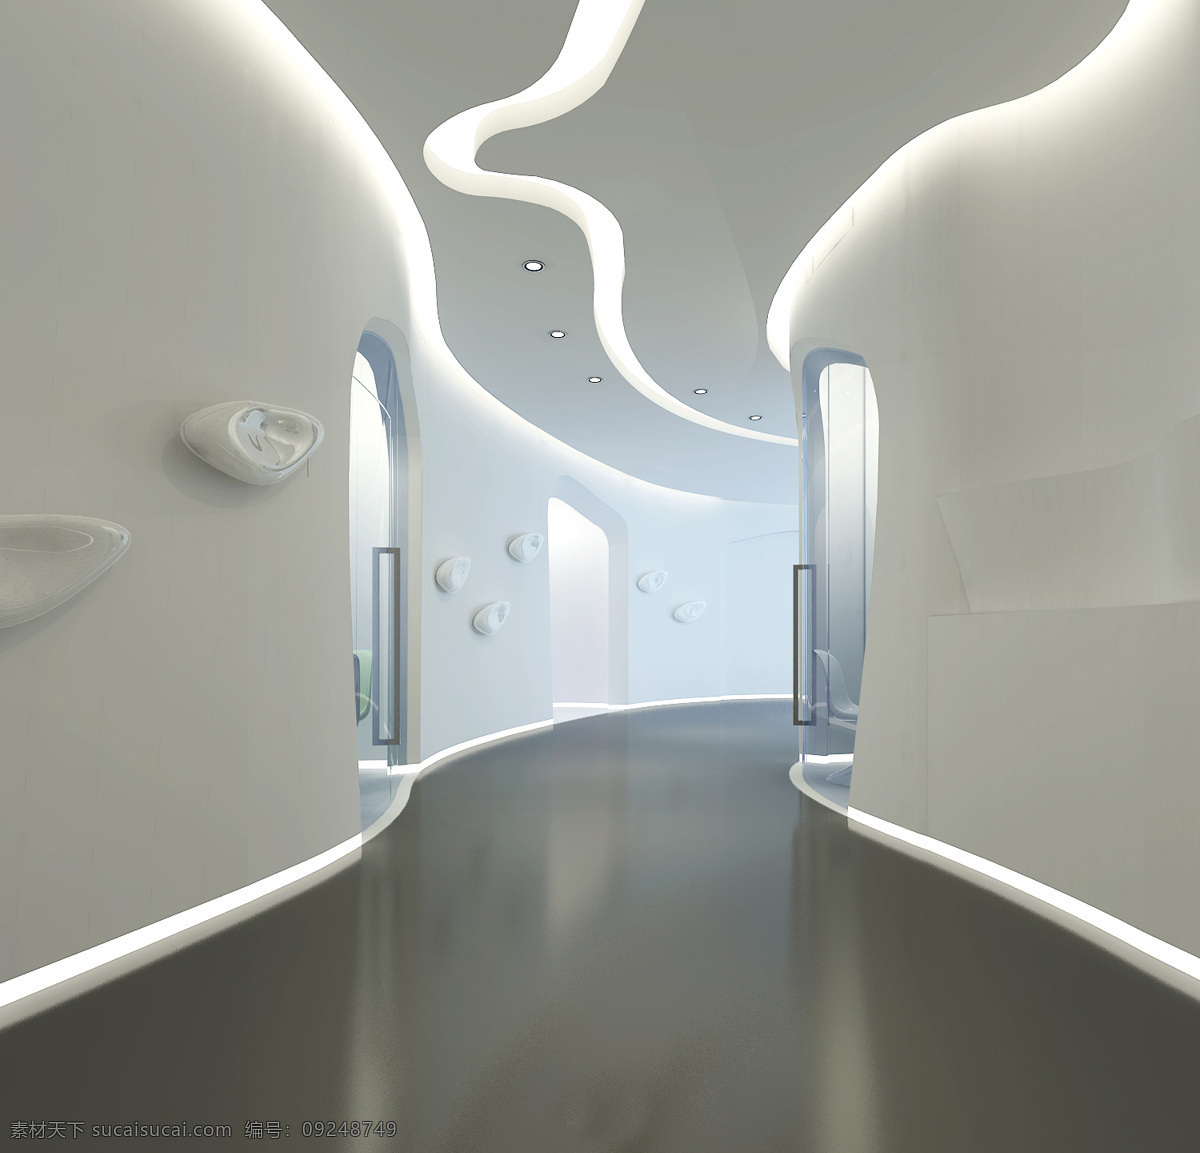 走廊 白色 调 装修 效果图 室内设计 工装效果图 白色调